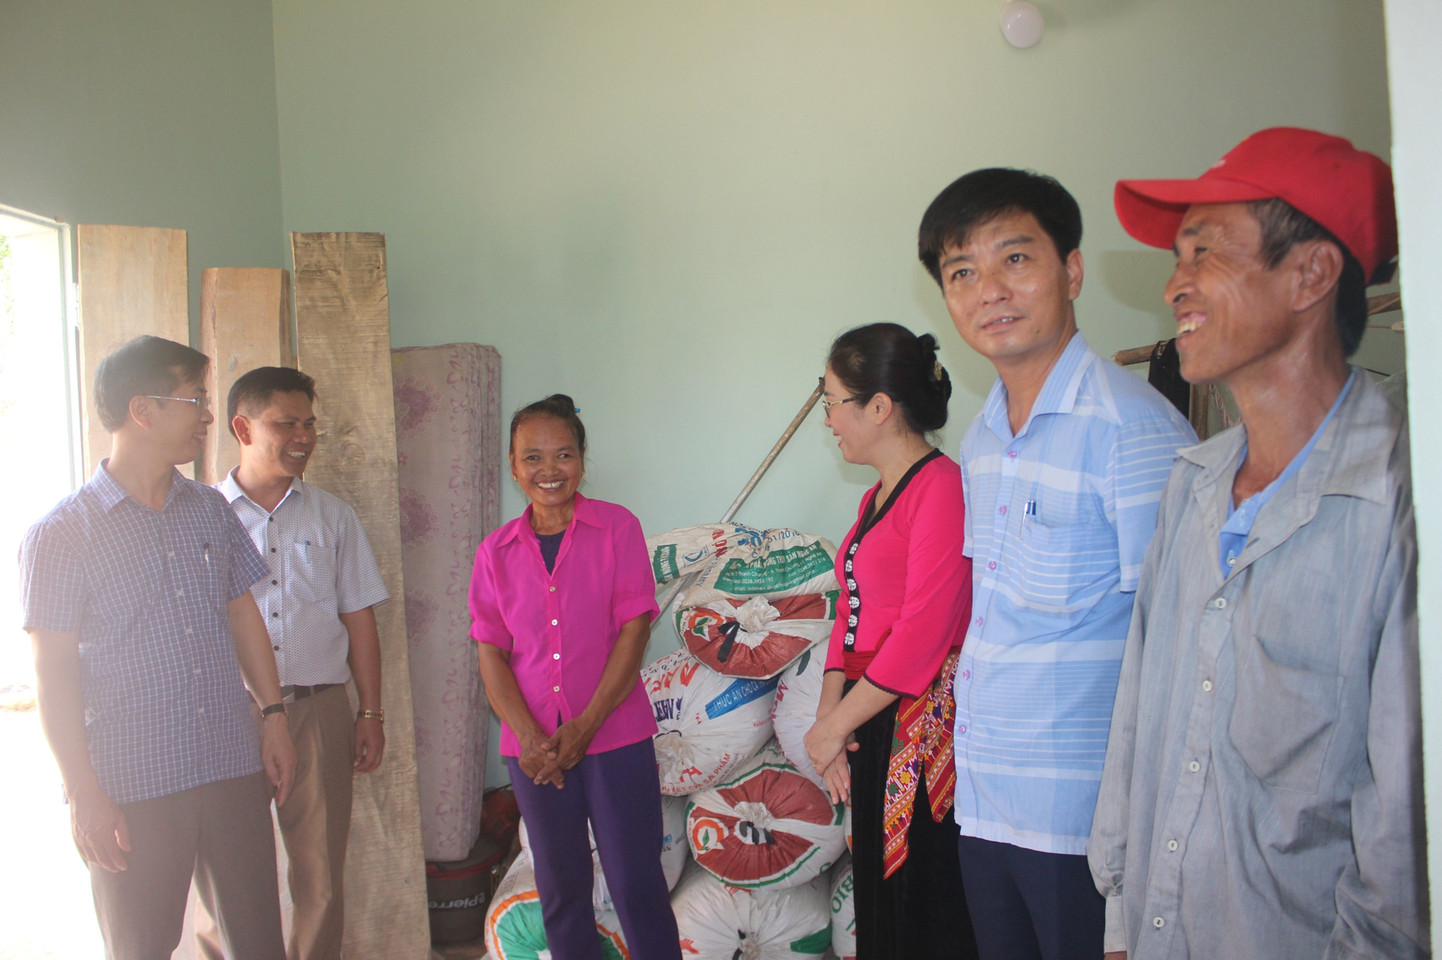 Vietbank trao tặng 2 căn nhà tình nghĩa tại Nghệ An